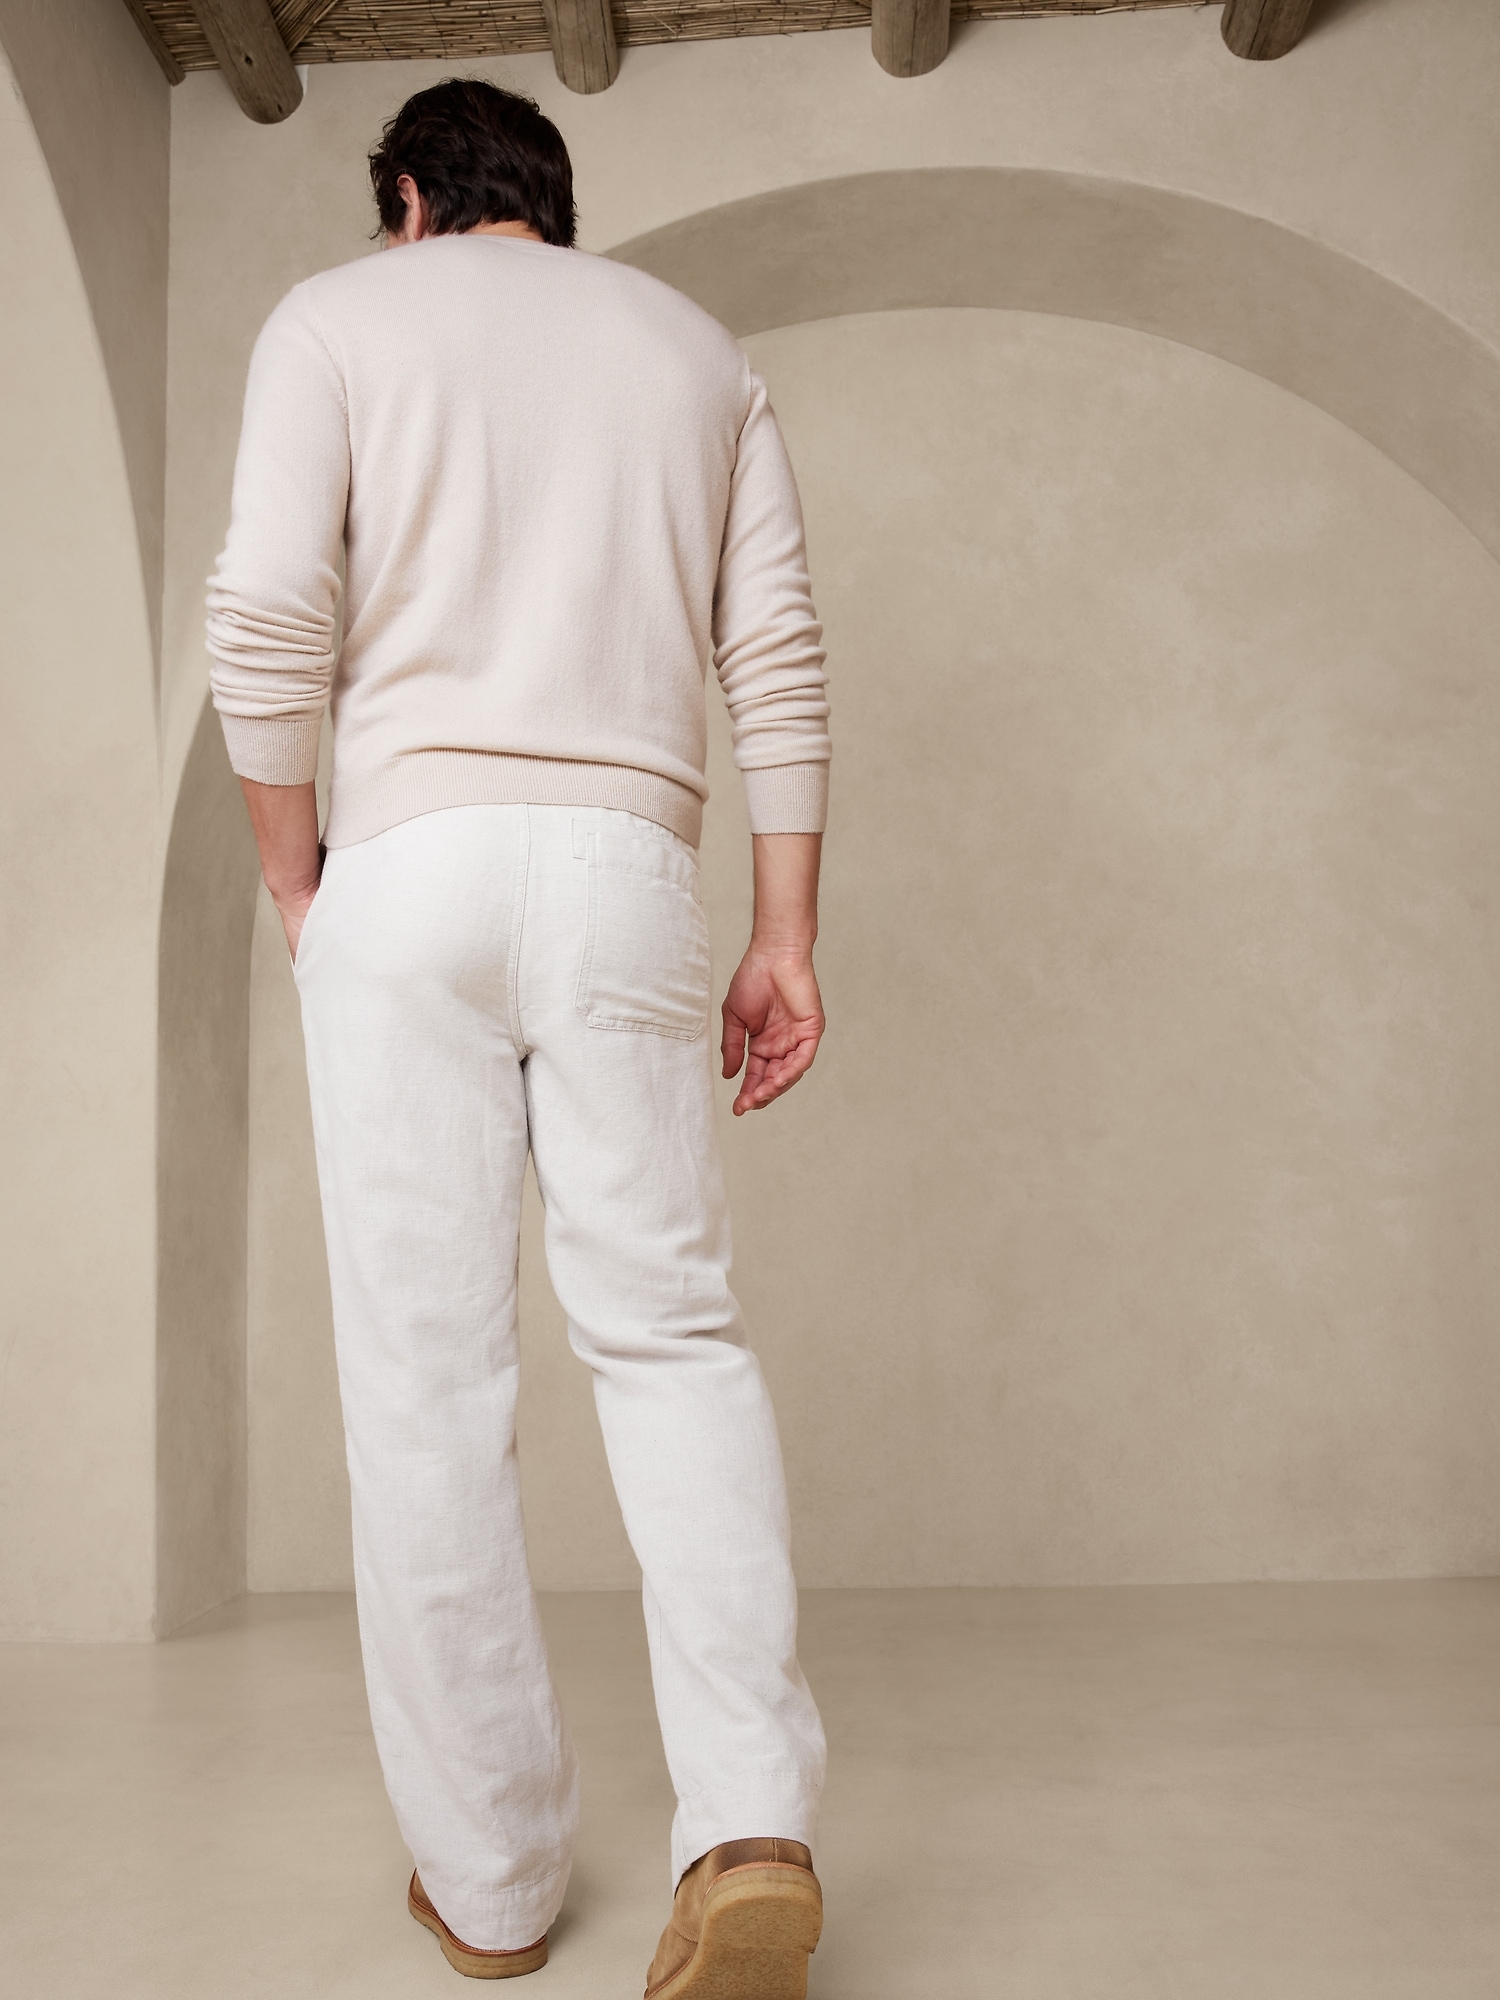 Castello Linen-Cotton Pant